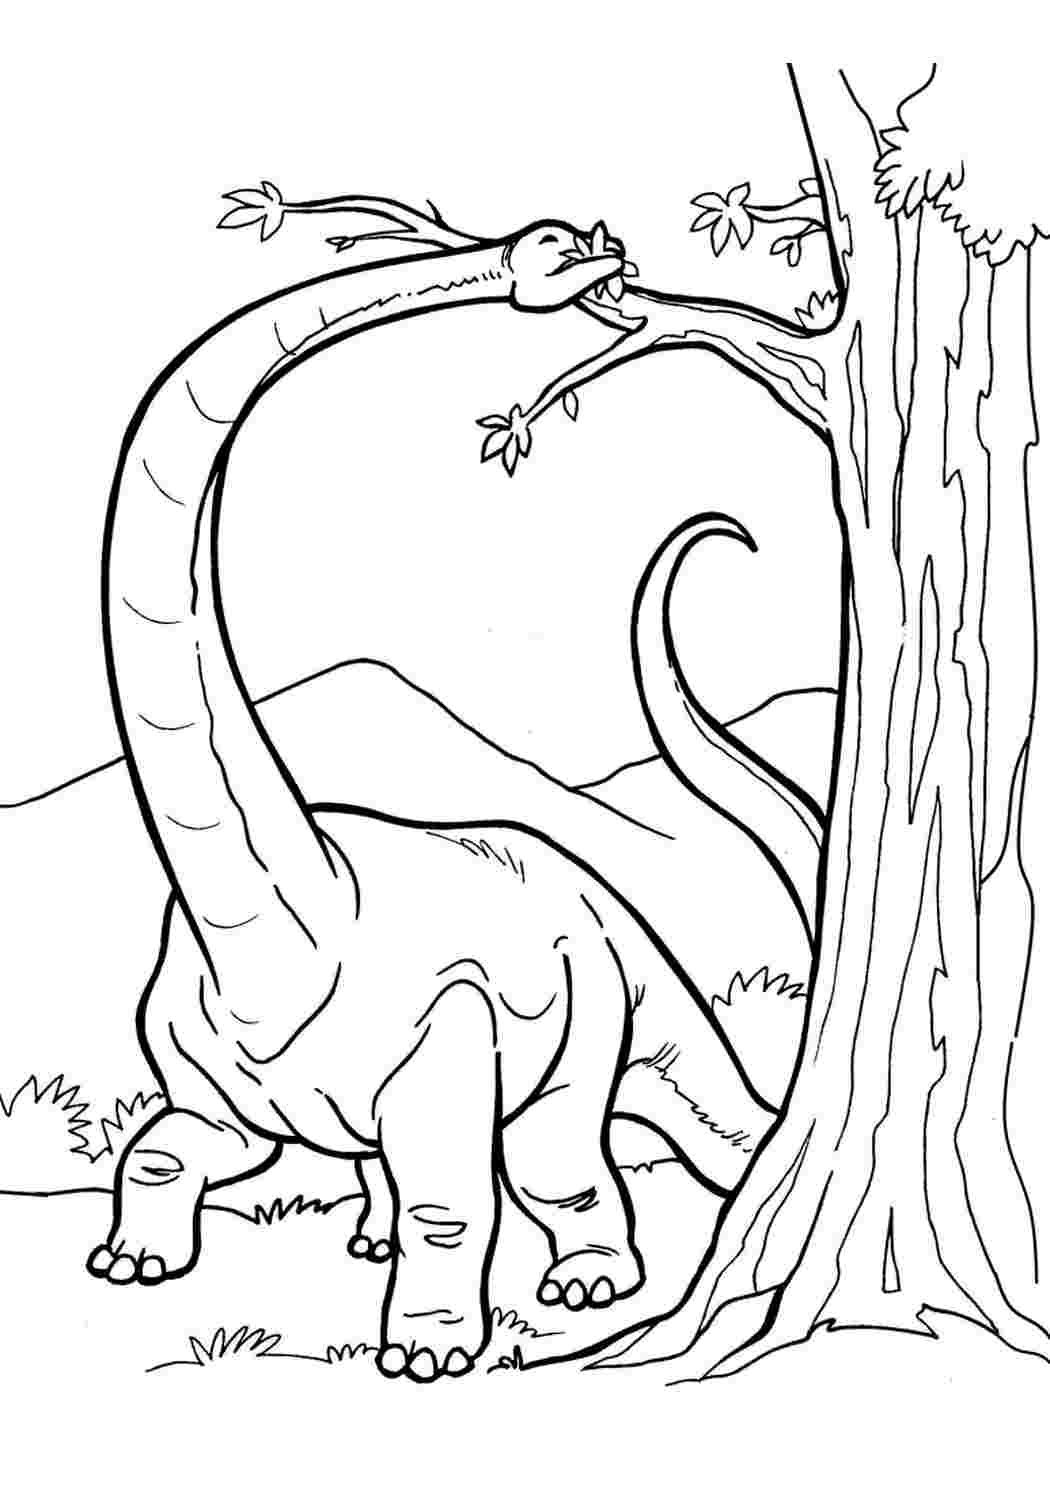 Раскраска динозавр формат а4. Раскраска динозавр Диплодок. Динозавры раскраски Диплодок Диплодок. Динозавры раскраска типлодог. Раскраска динозавр Бронтозавр.